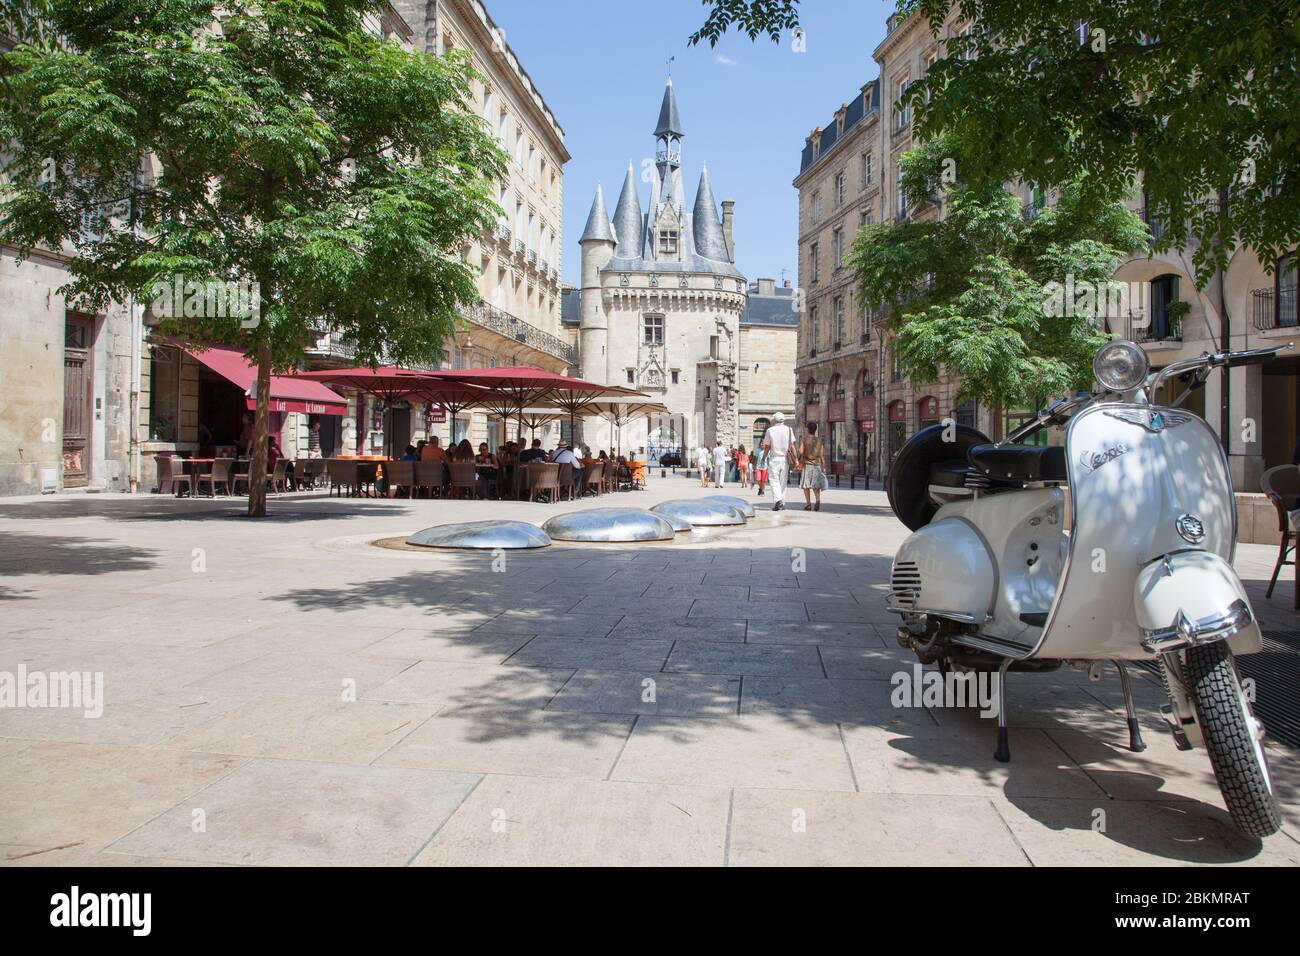 Bordeaux , Aquitaine / France - 11 07 2019 : Bordeaux Place du Palais with vintage scooter post card Stock Photo